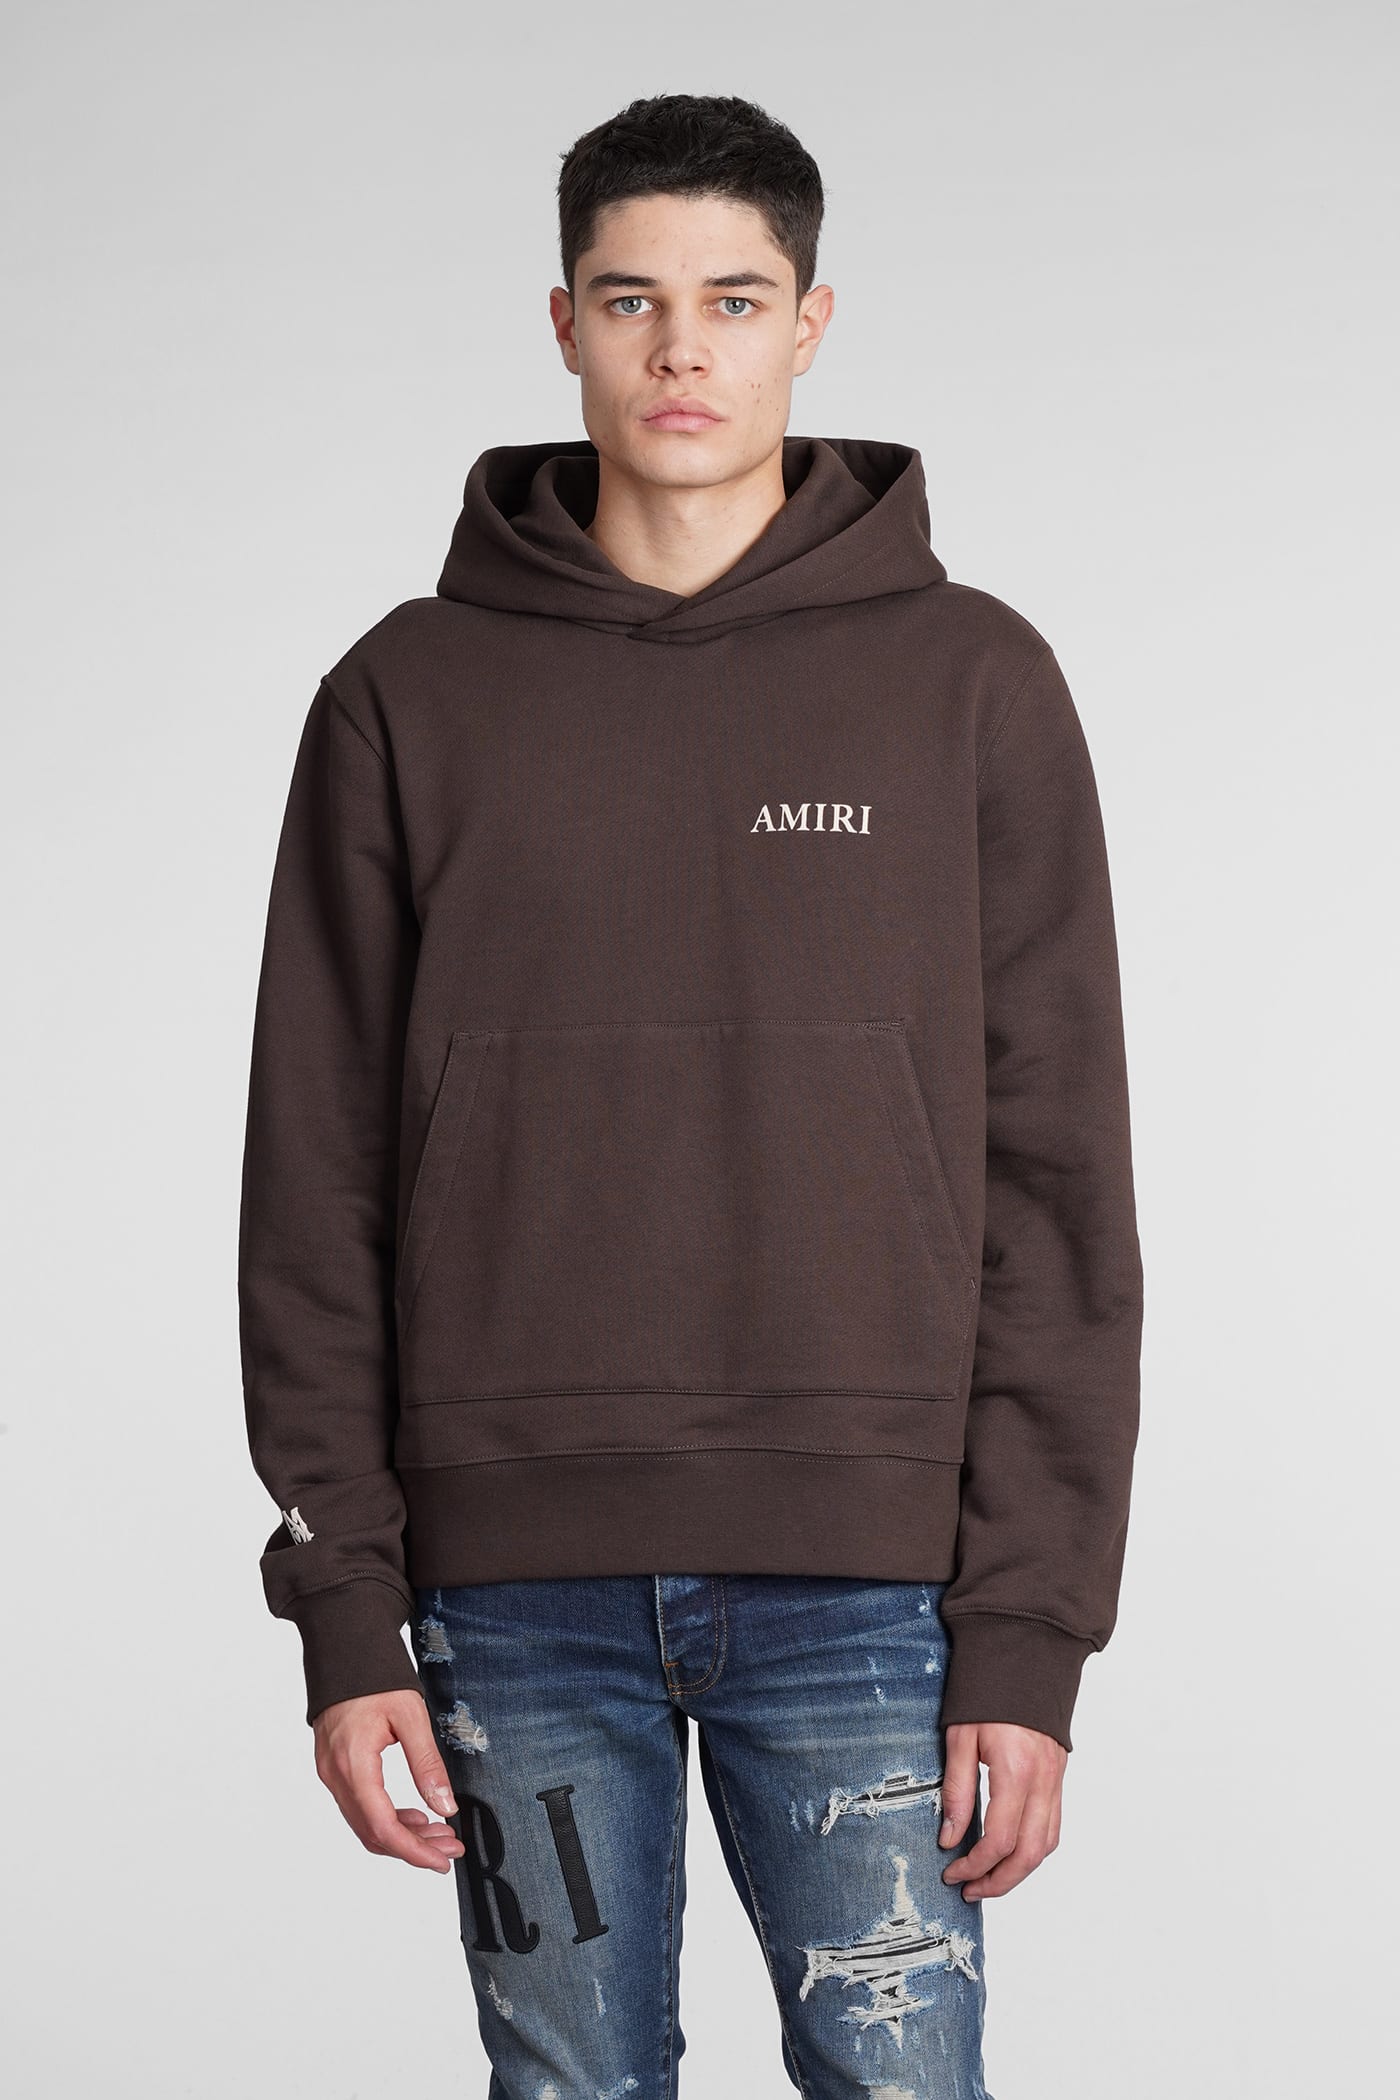 AMIRI Sweatshirt In Brown Cotton